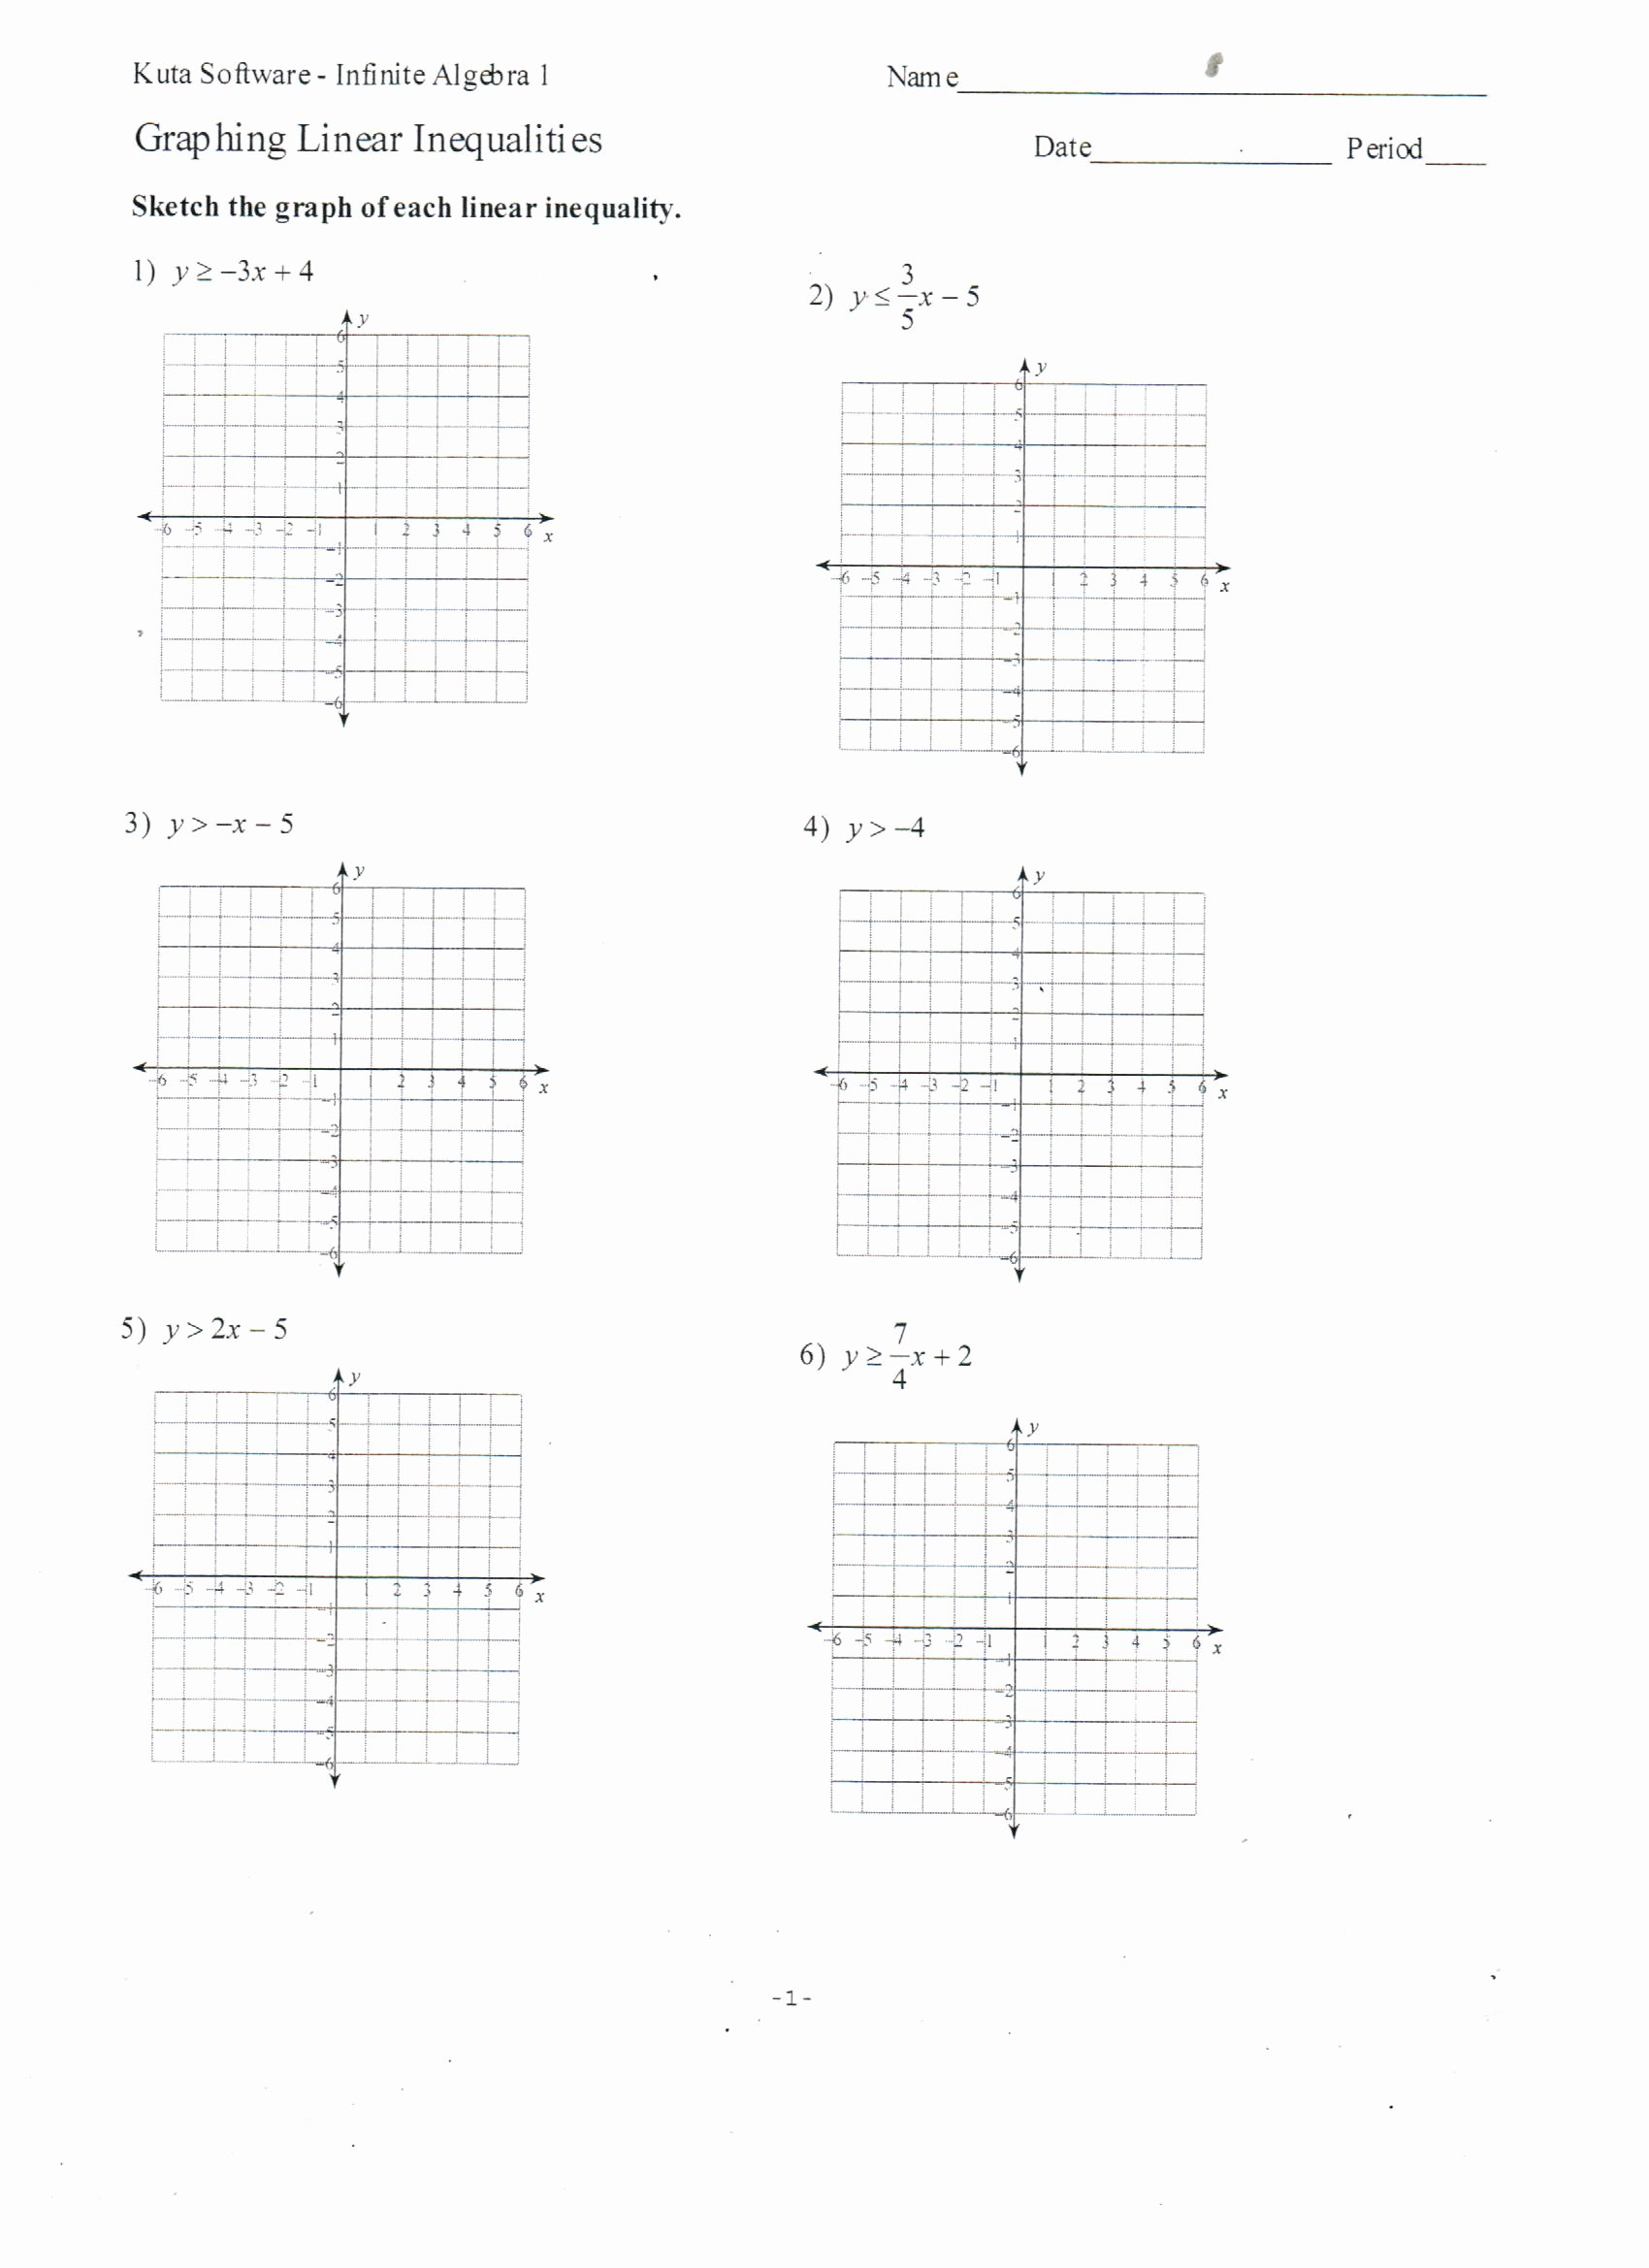 Graphing Linear Inequalities Worksheet Elegant Graphing Linear Inequalities Worksheet Doc